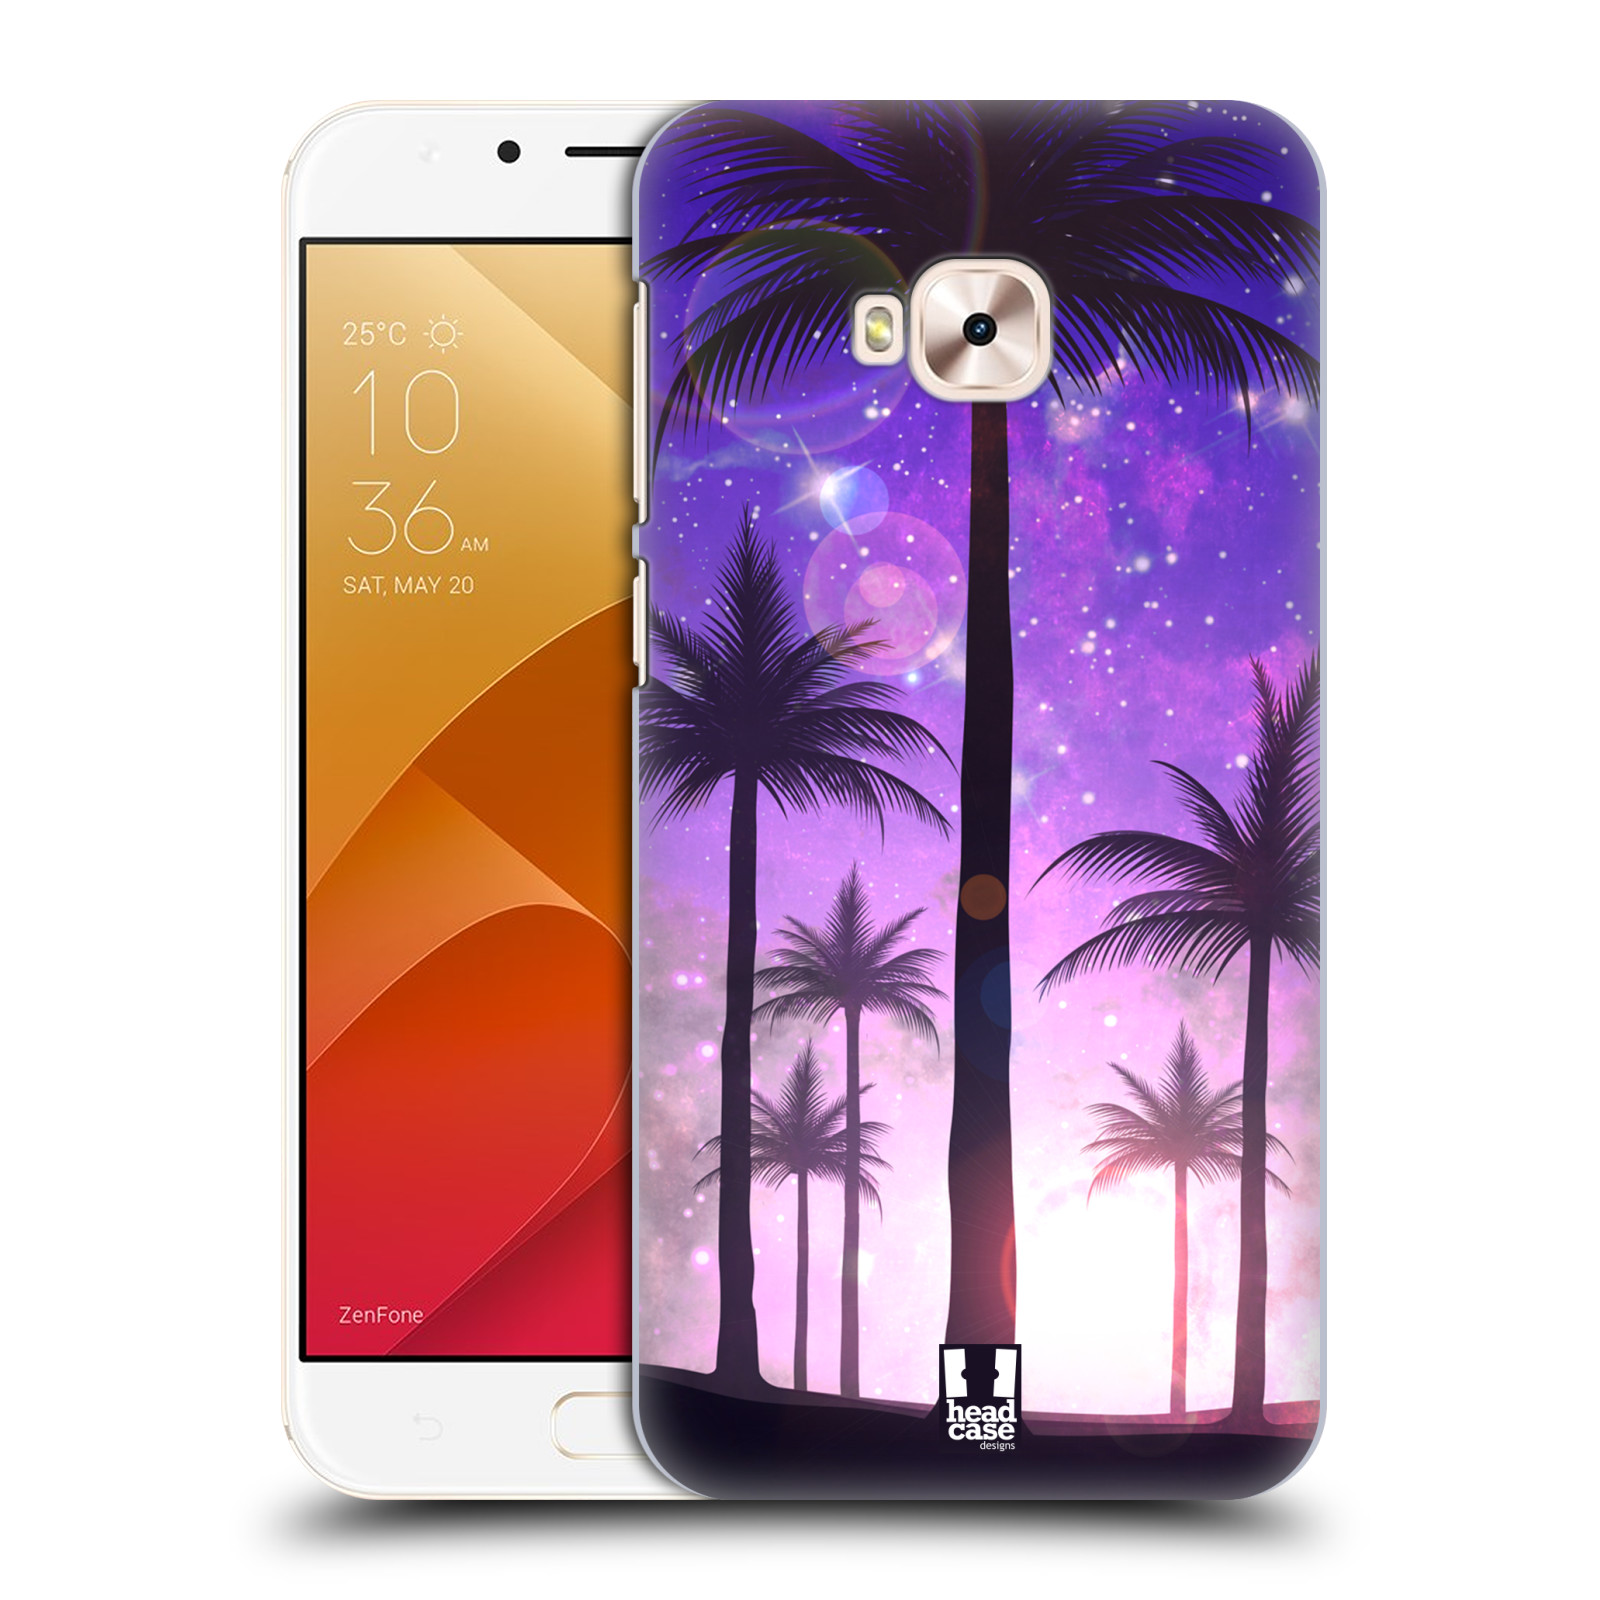 HEAD CASE plastový obal na mobil Asus Zenfone 4 Selfie Pro ZD552KL vzor Kreslený motiv silueta moře a palmy FIALOVÁ